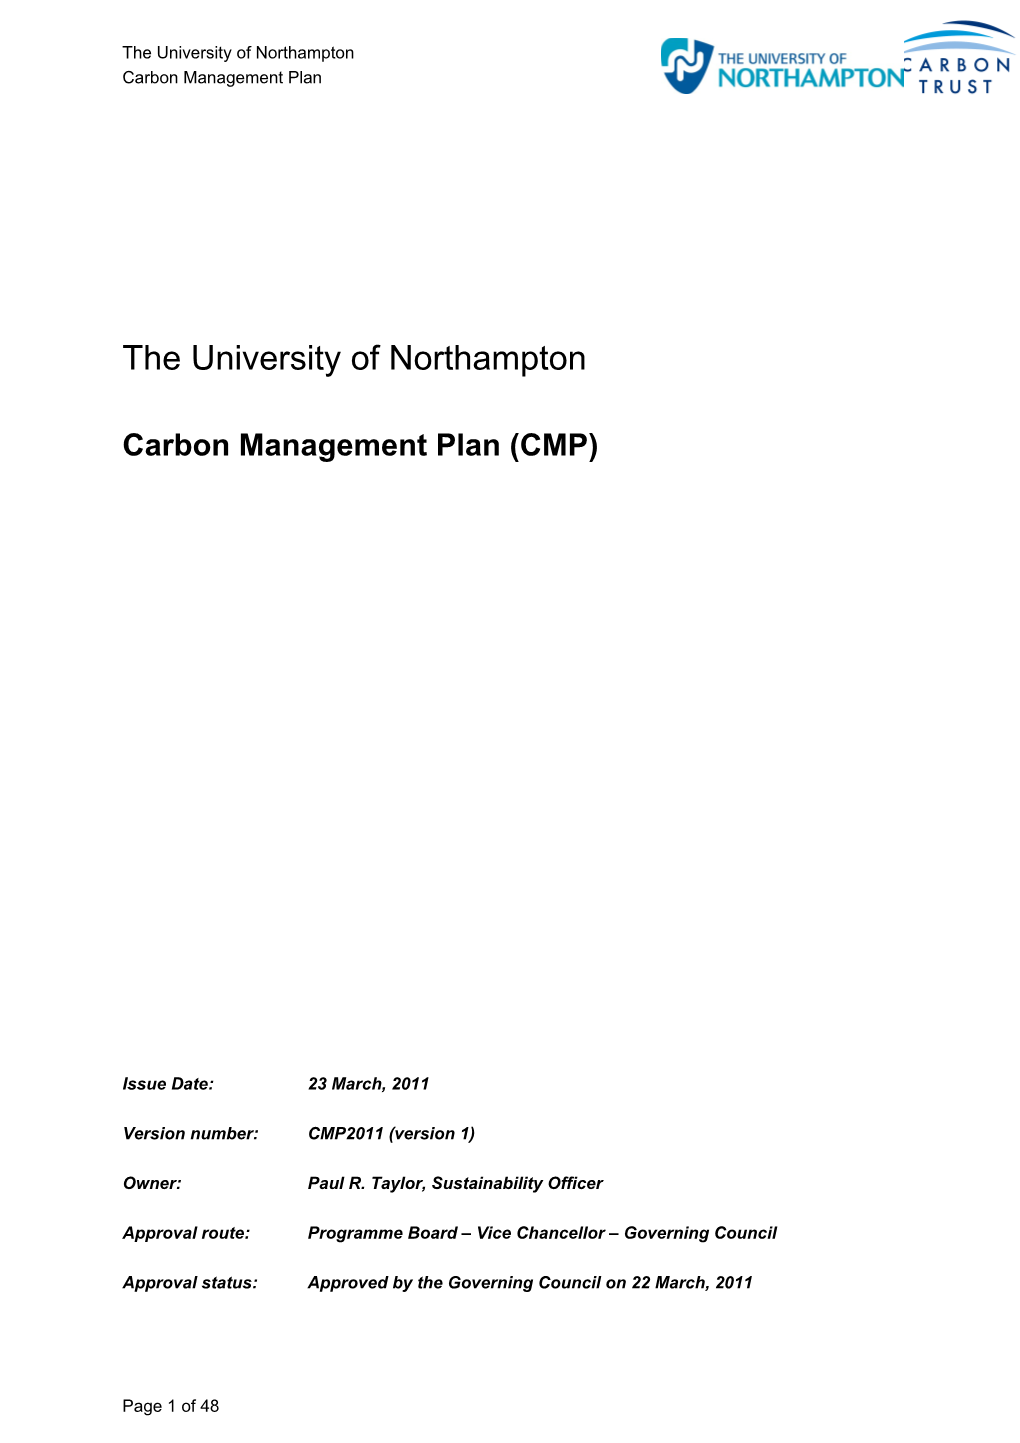 Carbon Management Plan